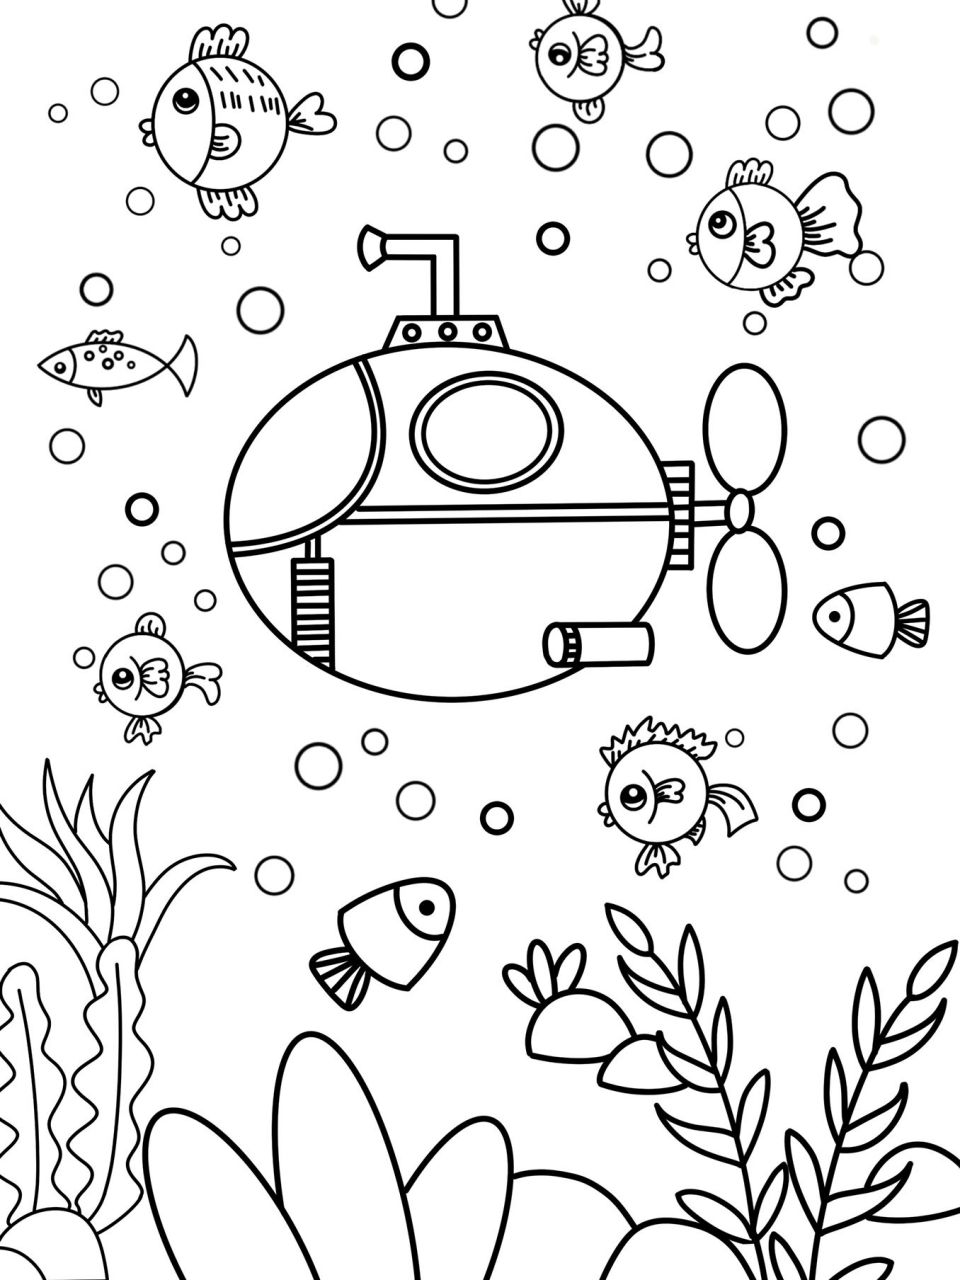 潜水艇简画图图片